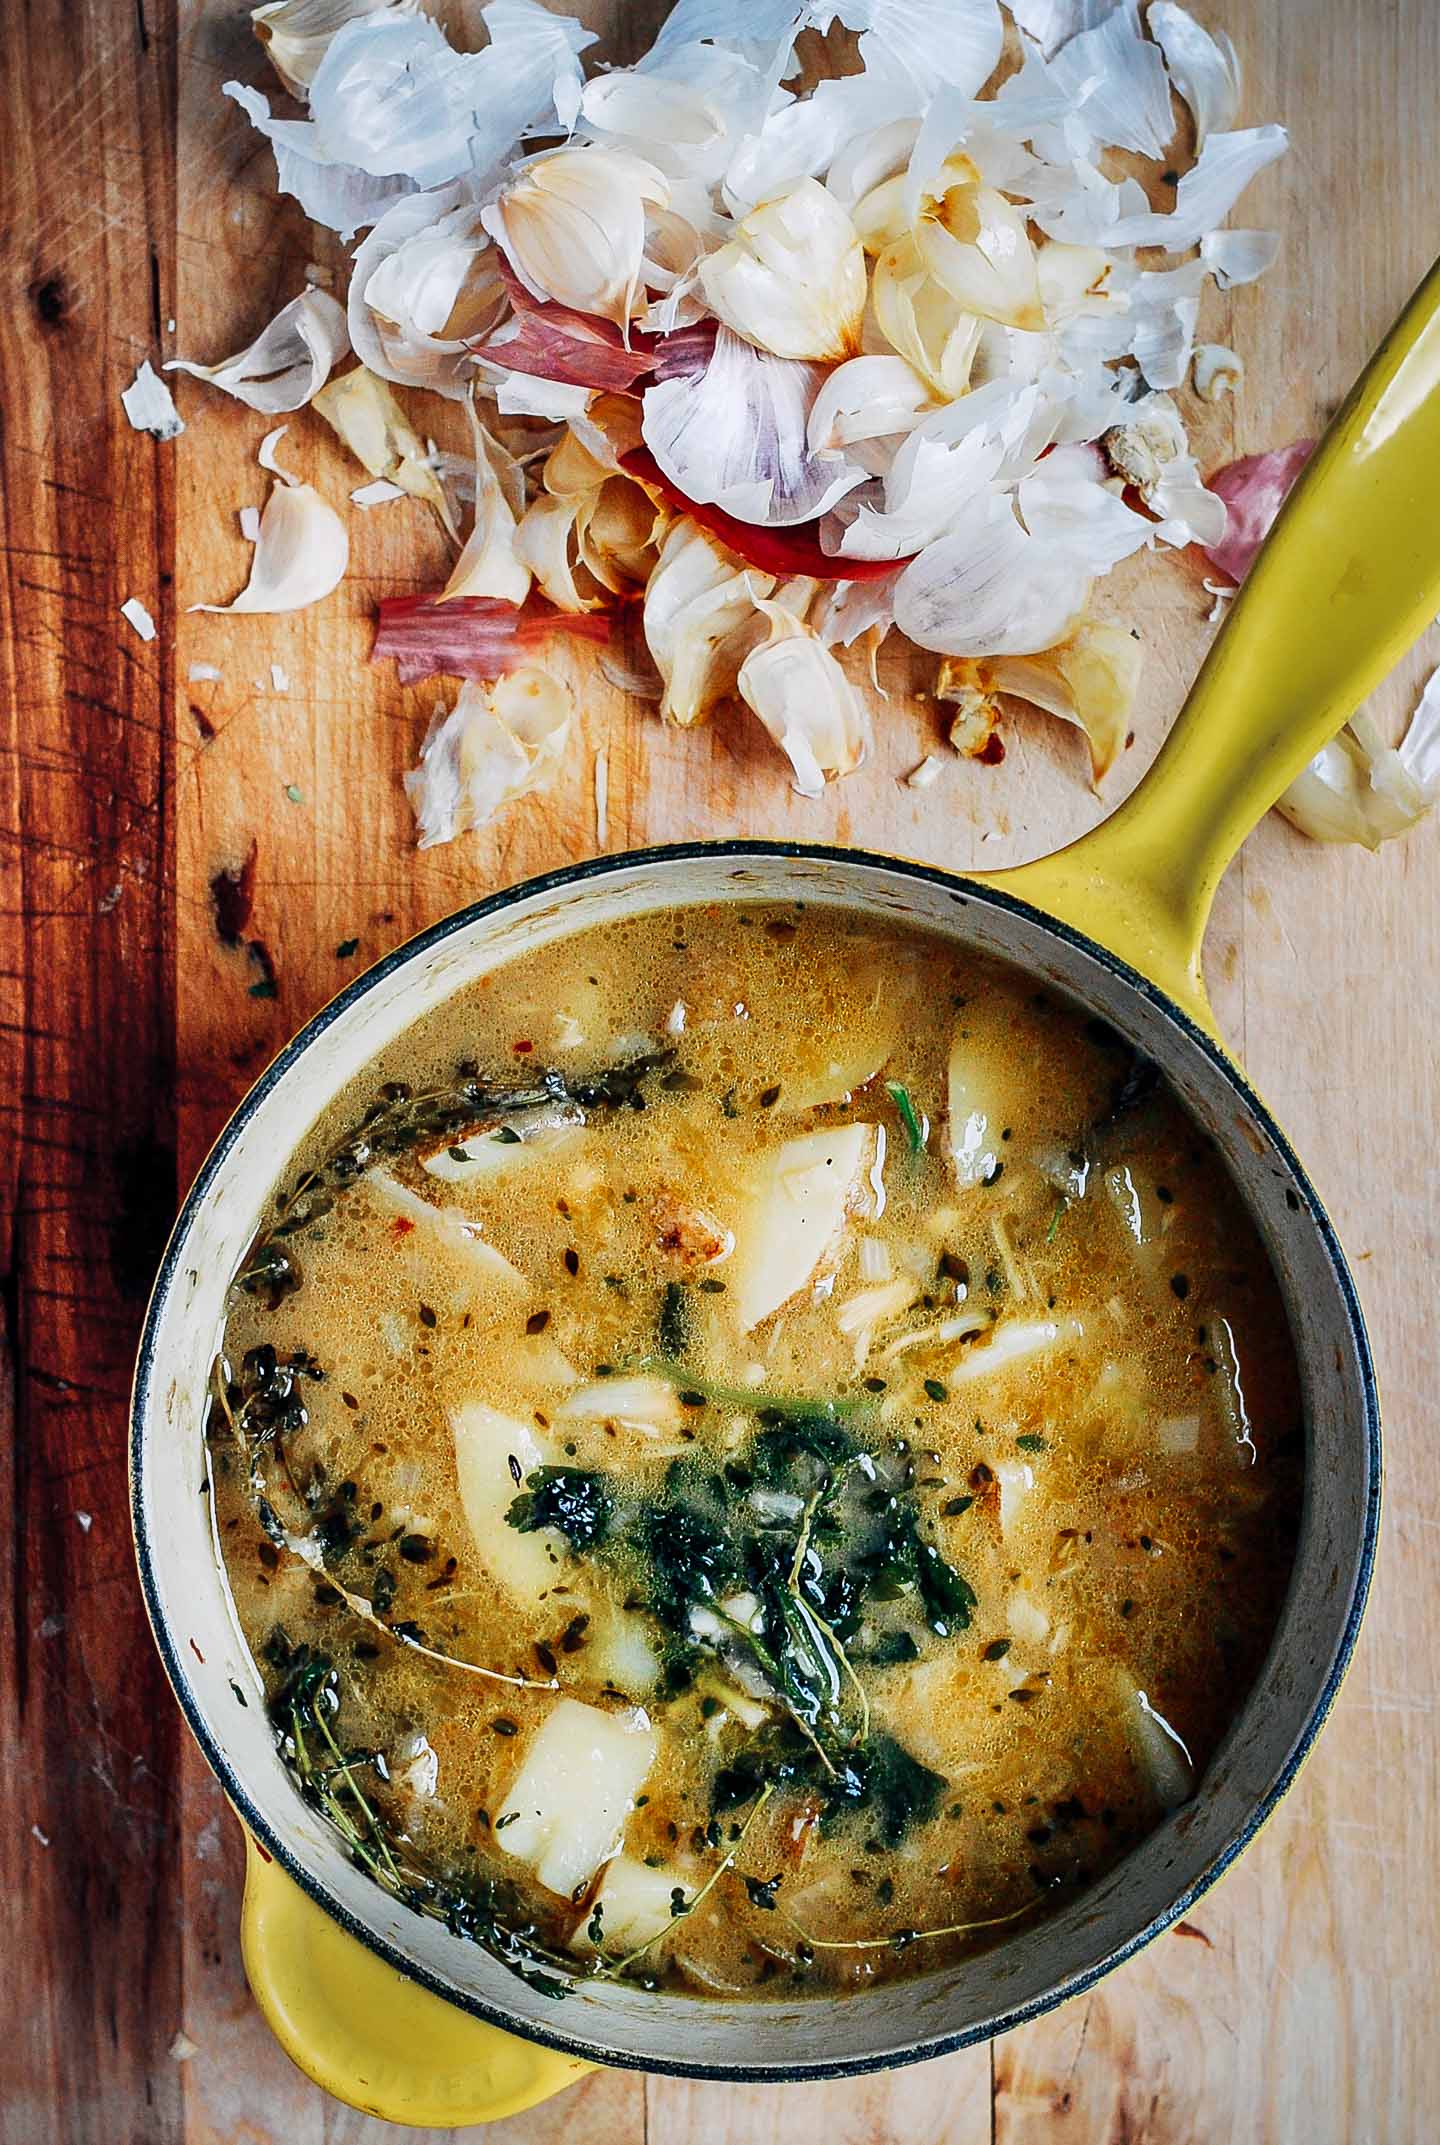 Making homemade garlic soup.